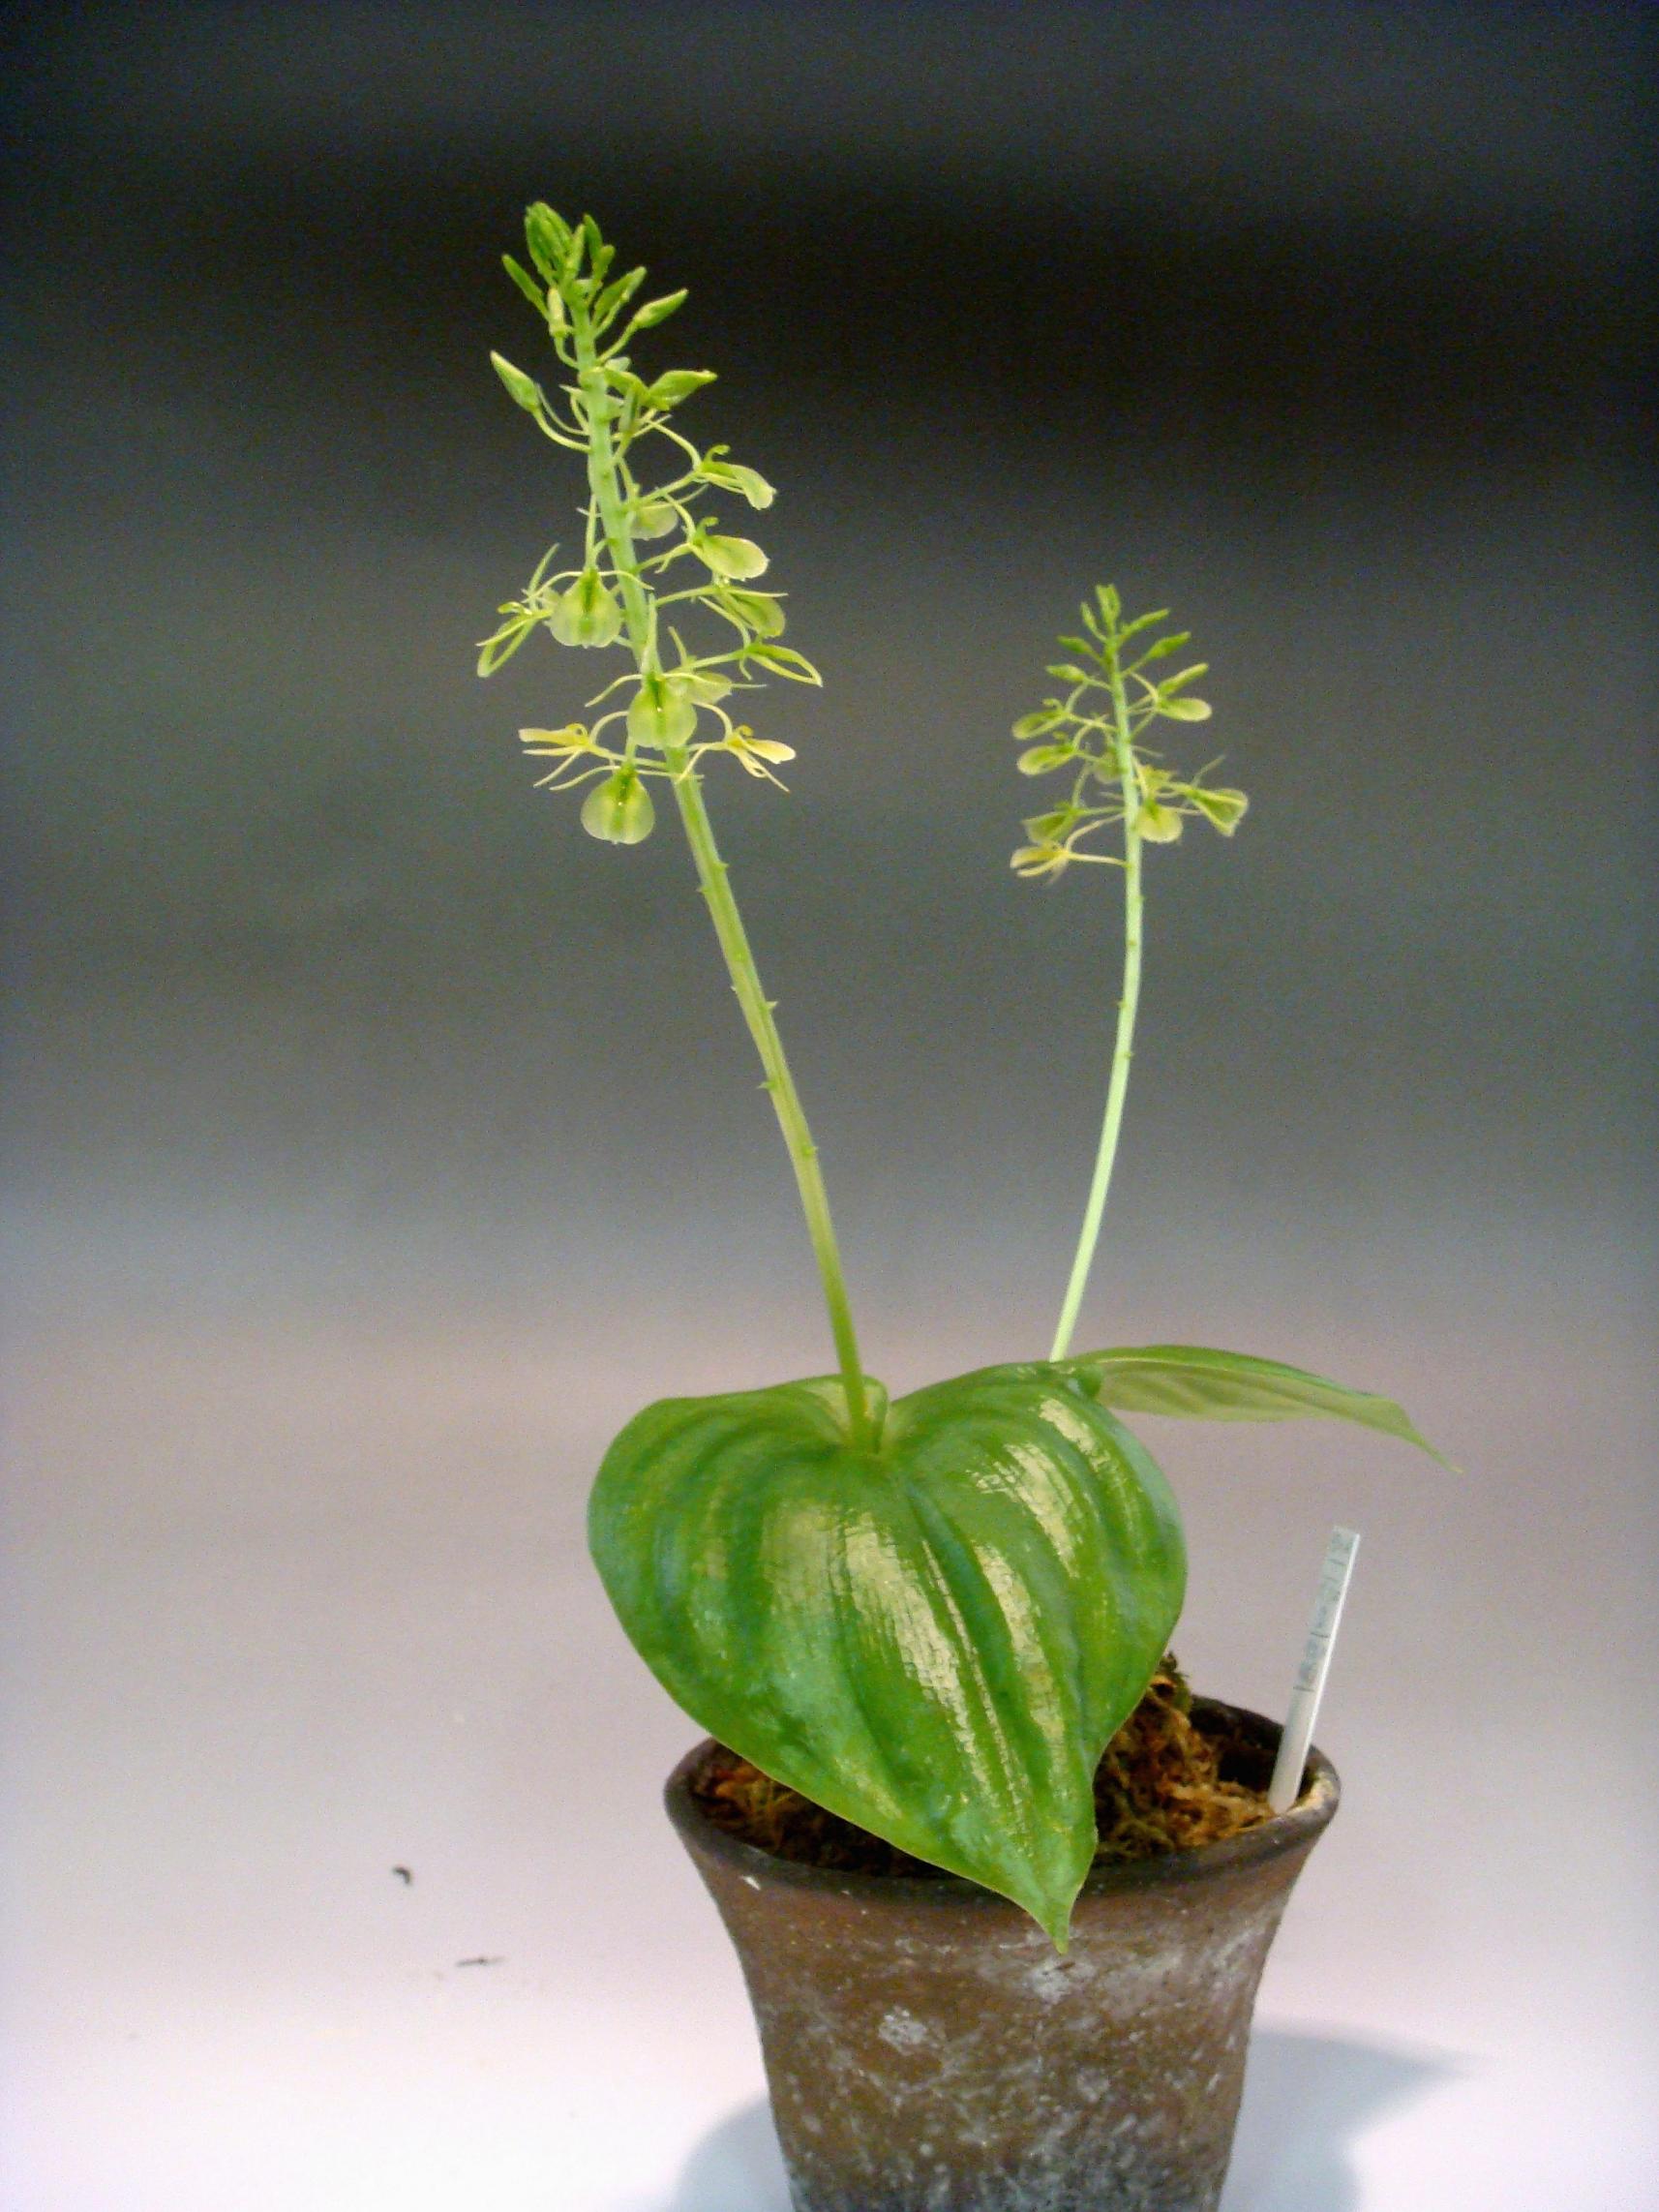 http://orchids.la.coocan.jp/Liparis/Liparis%20cordifolia/DSC02893.JPG